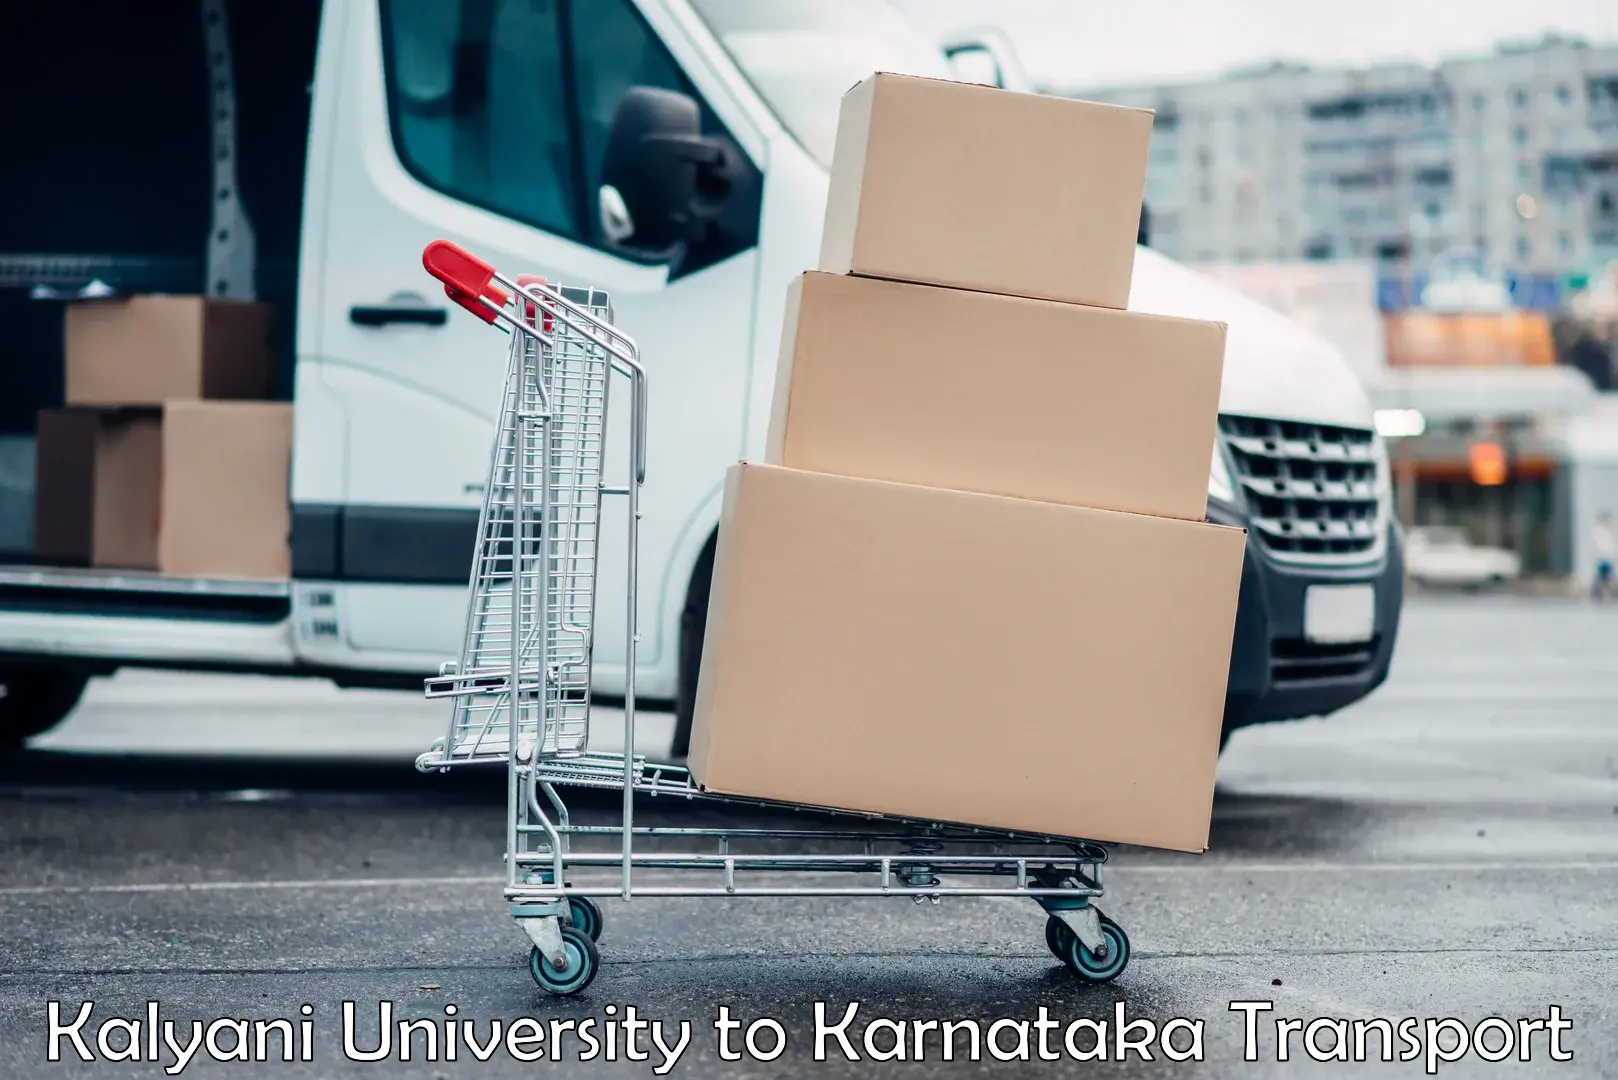 Nearest transport service Kalyani University to Kollegal